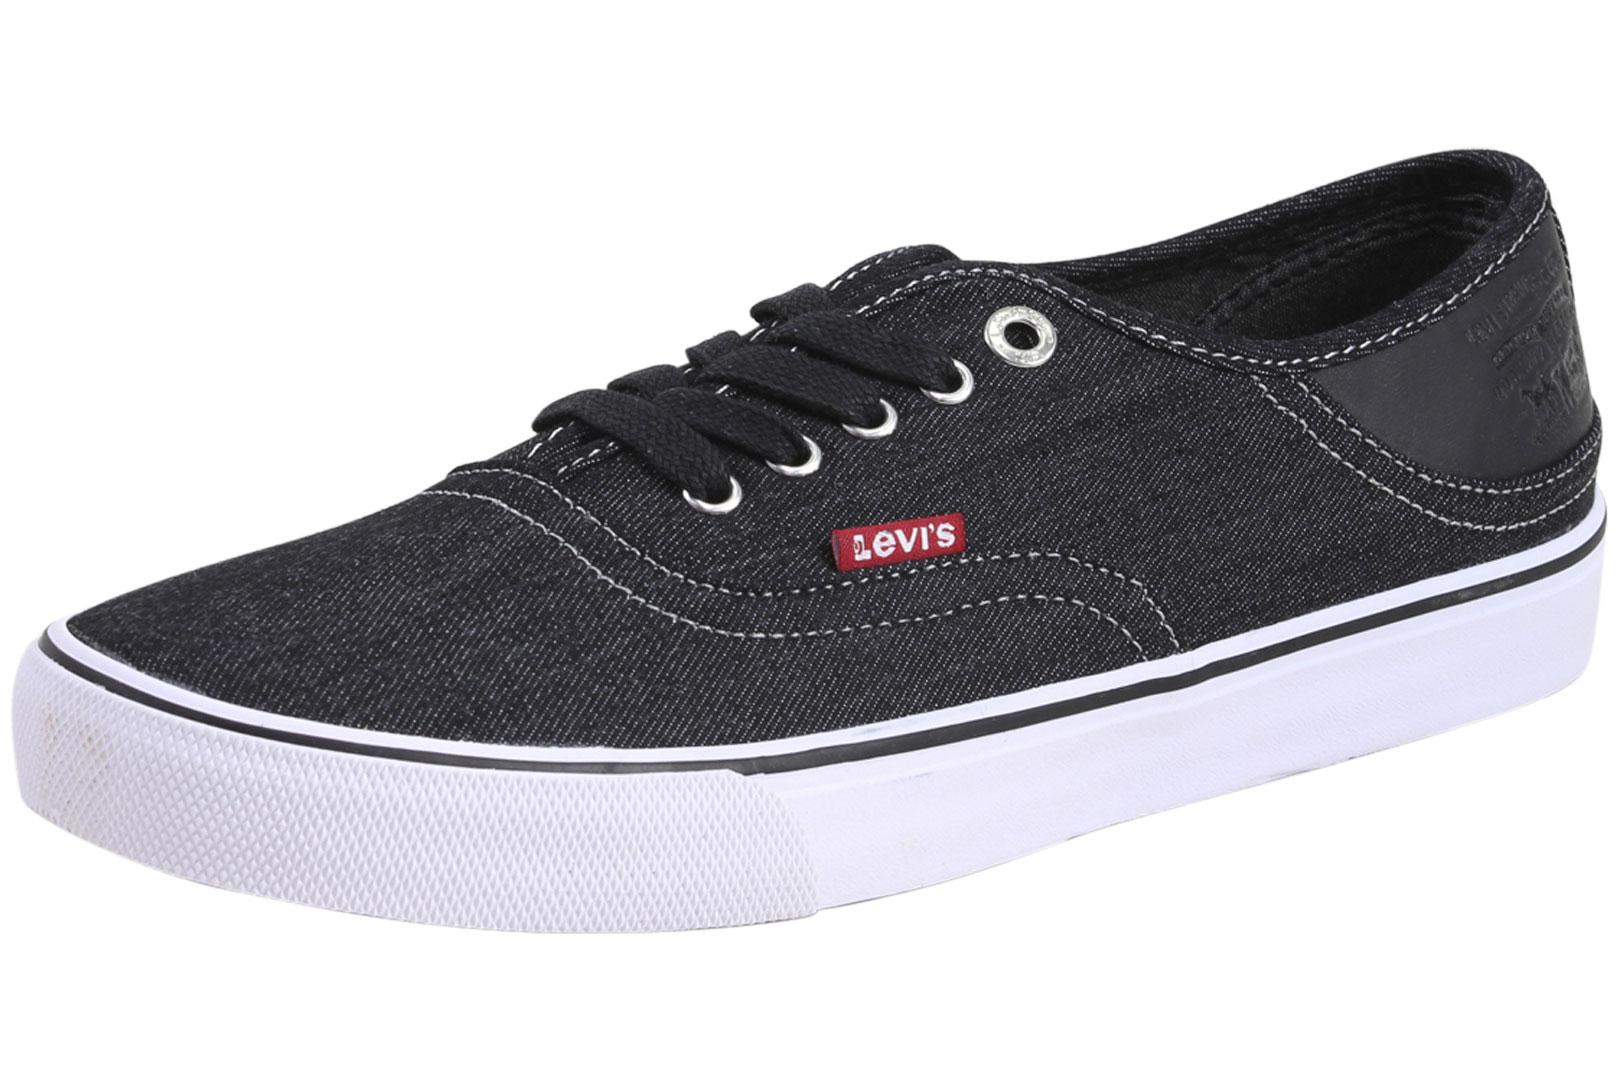 Levi's Men's Monterey Denim Sneakers Shoes - Black - 13 D(M) US